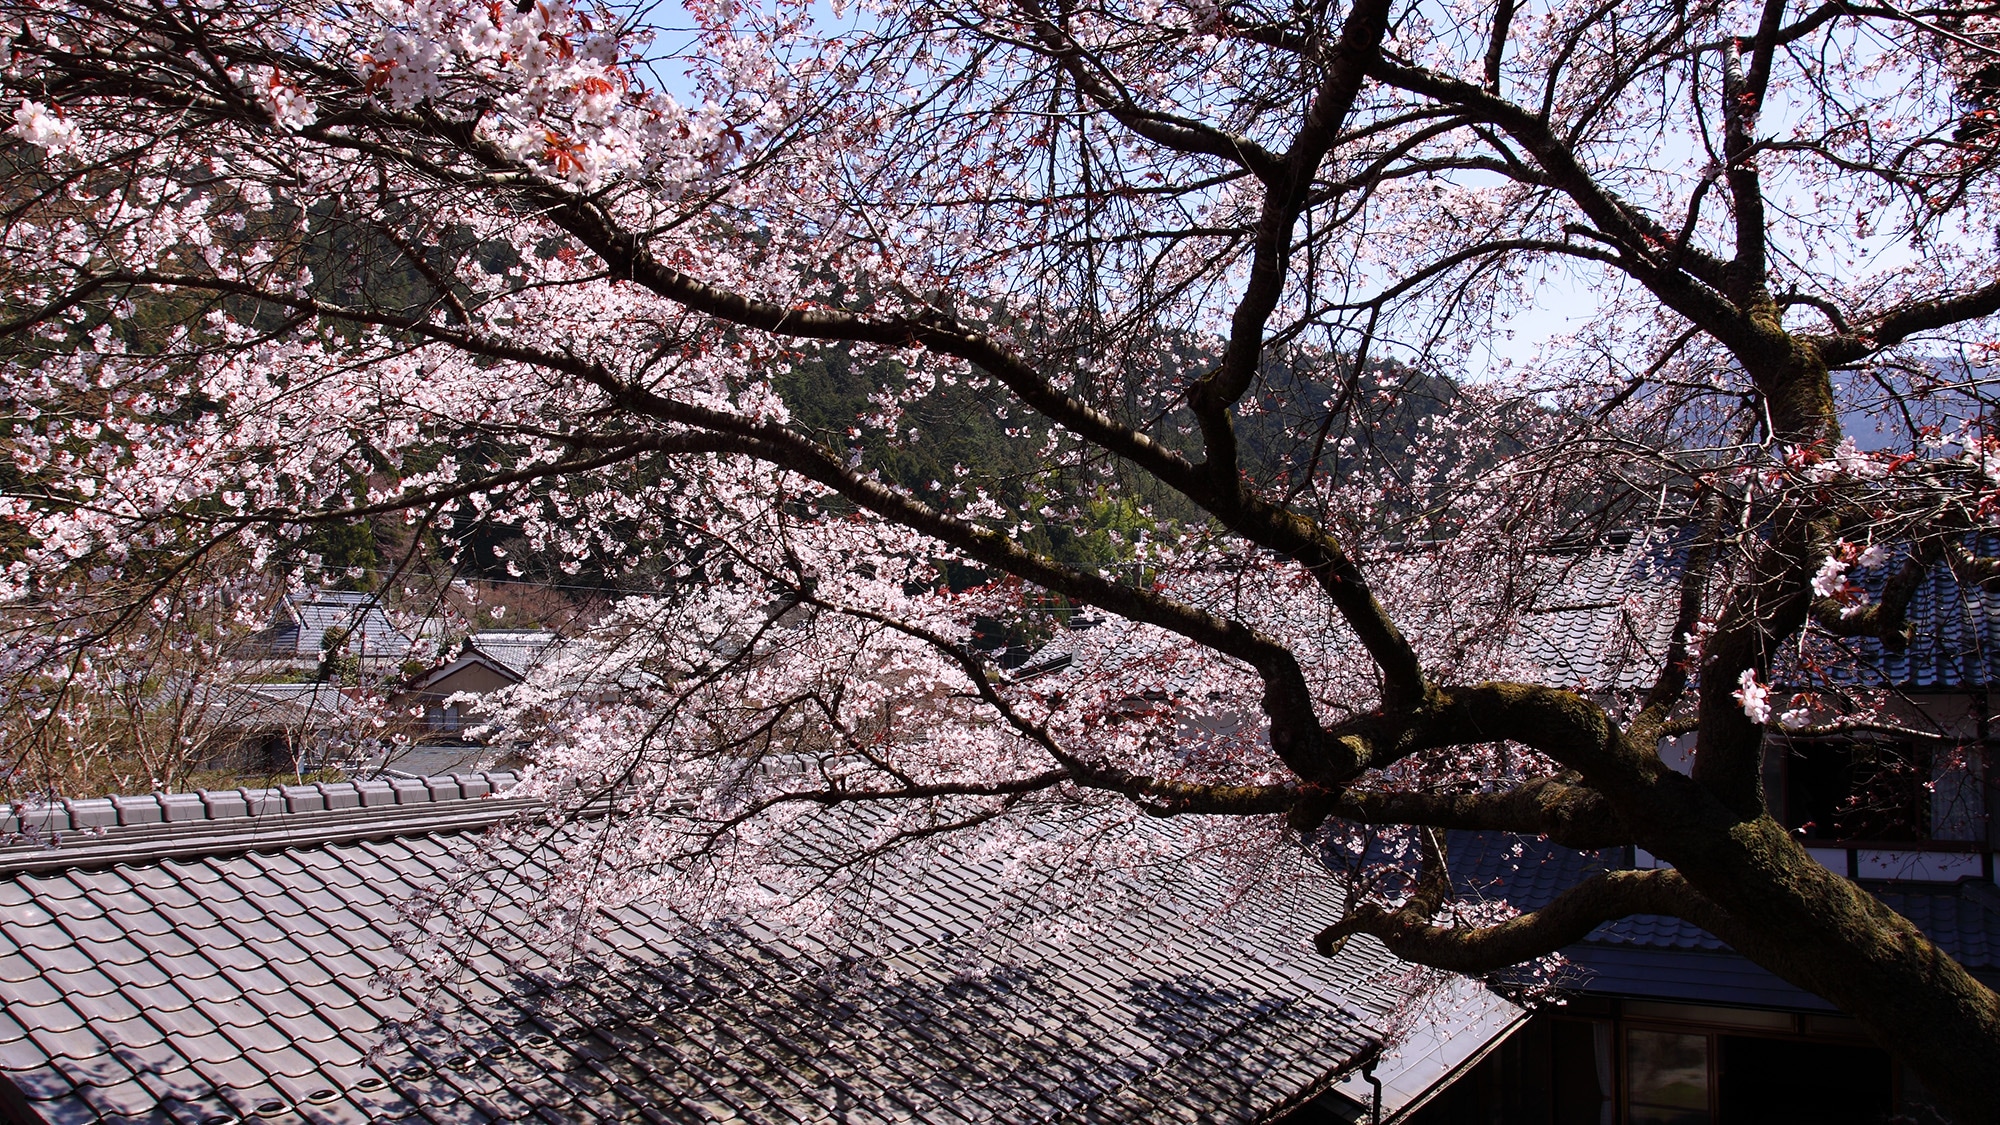 * [庭院] 庭院中還種植了櫻桃樹。